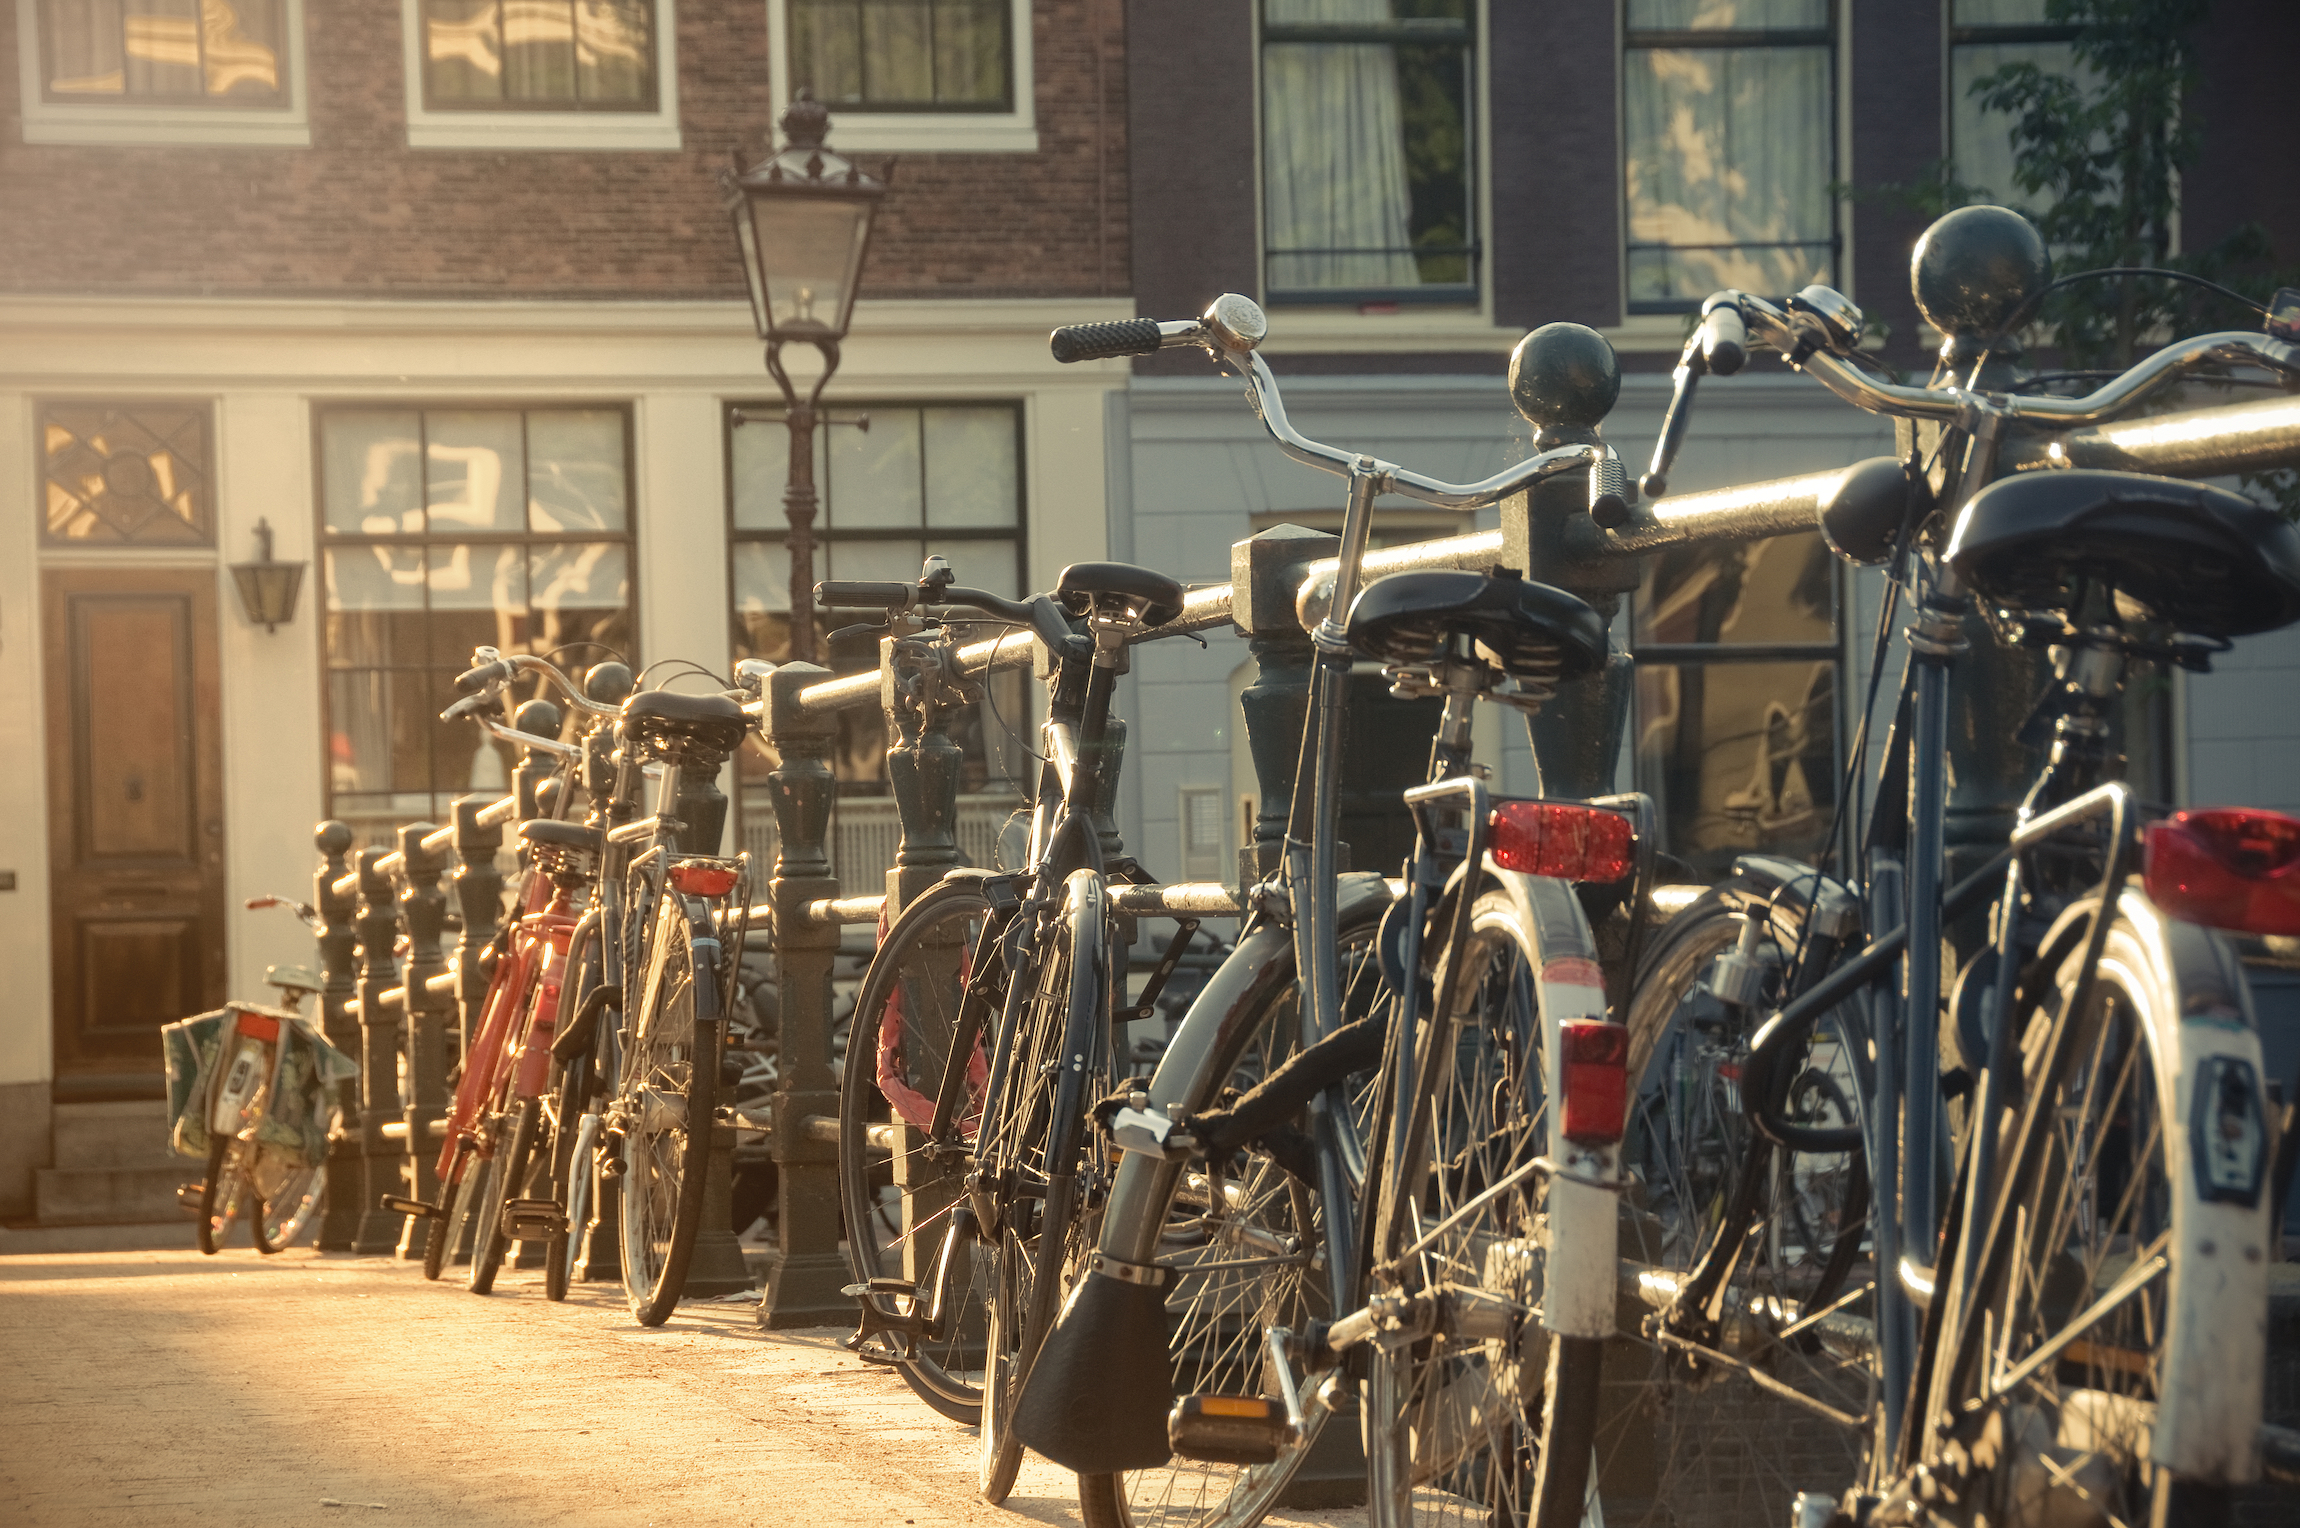 Rząd rowerów przy poręczy mostu w Amsterdamie, Holandia, o zachodzie słońca